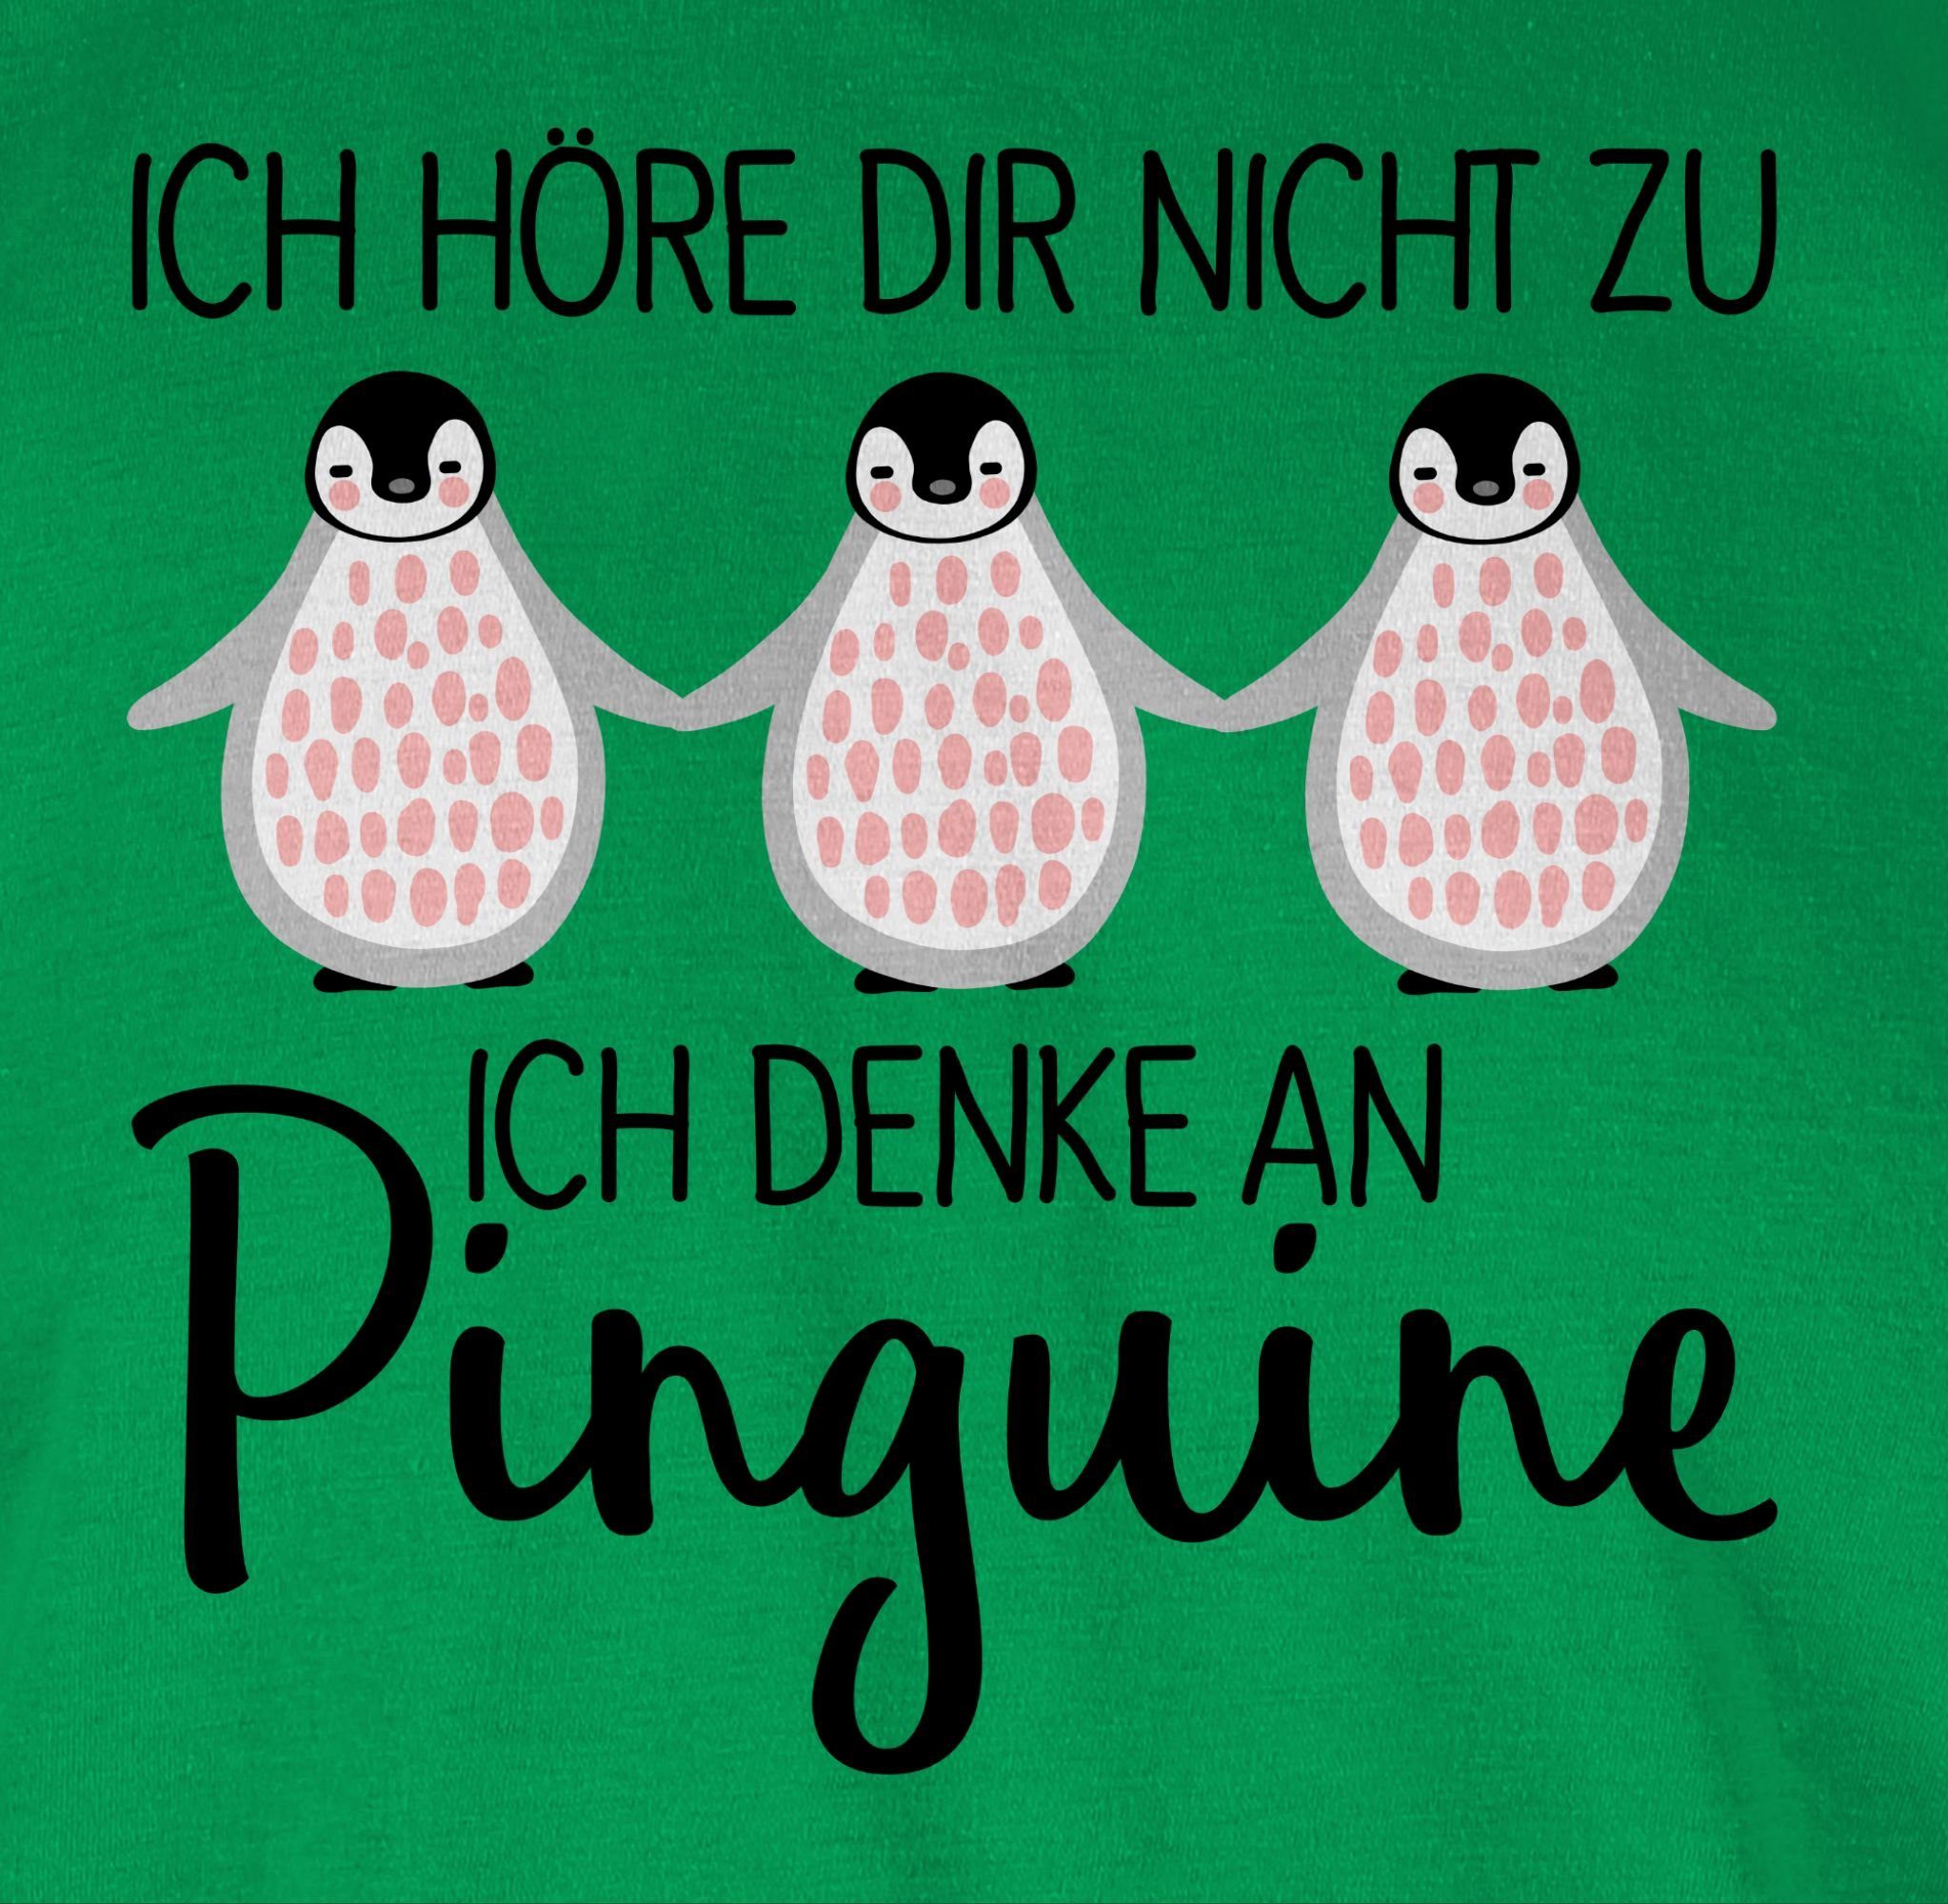 3 T-Shirt Zubehör an Grün Pinguine Ich Tiere Shirtracer denke